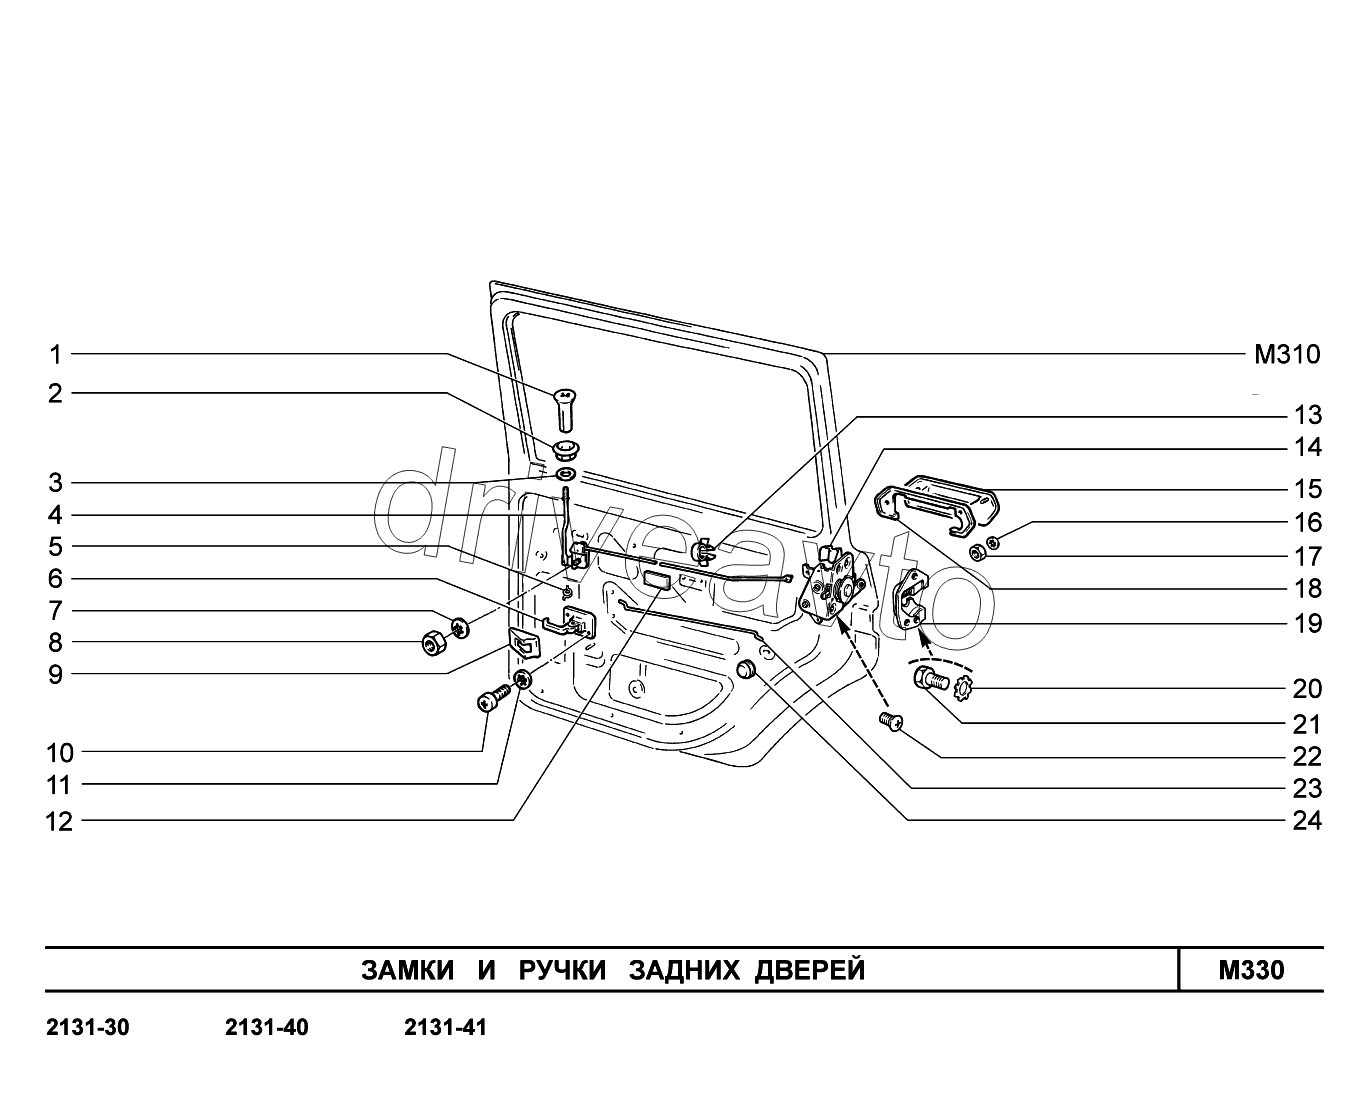 M330. Замки и ручки задних дверей